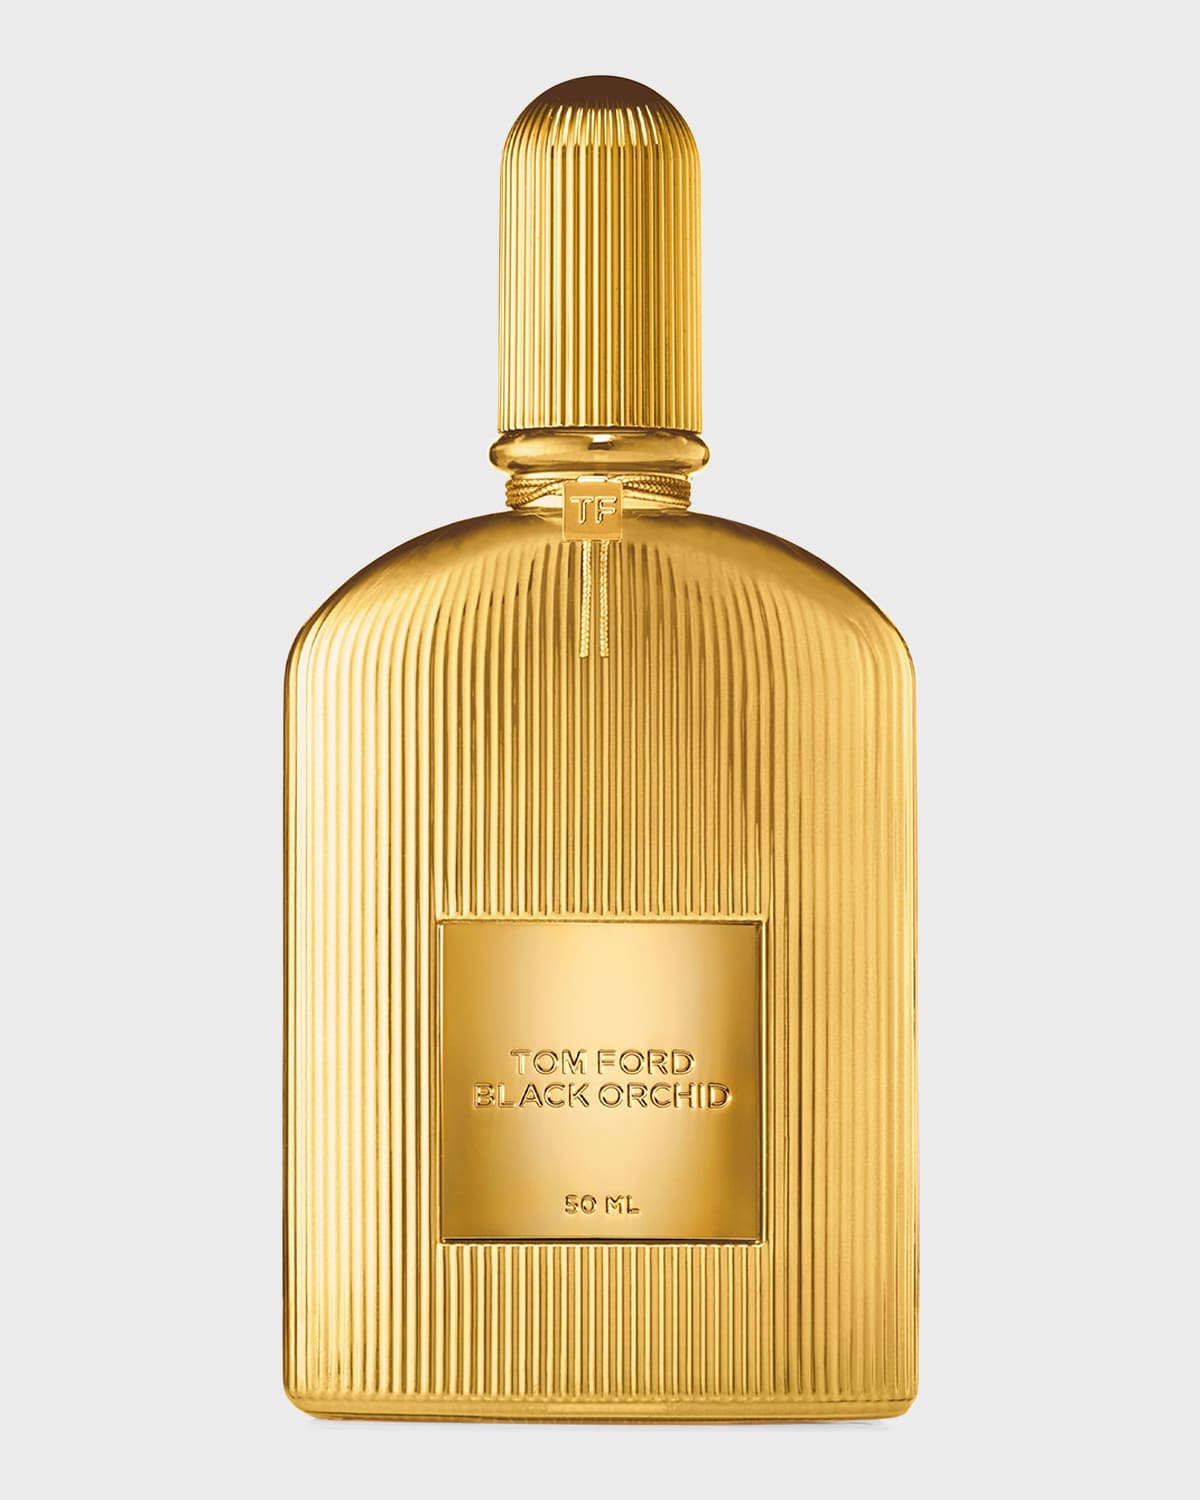 TOM FORD Black Orchid Eau de Parfum, 3.4 oz. | Neiman Marcus